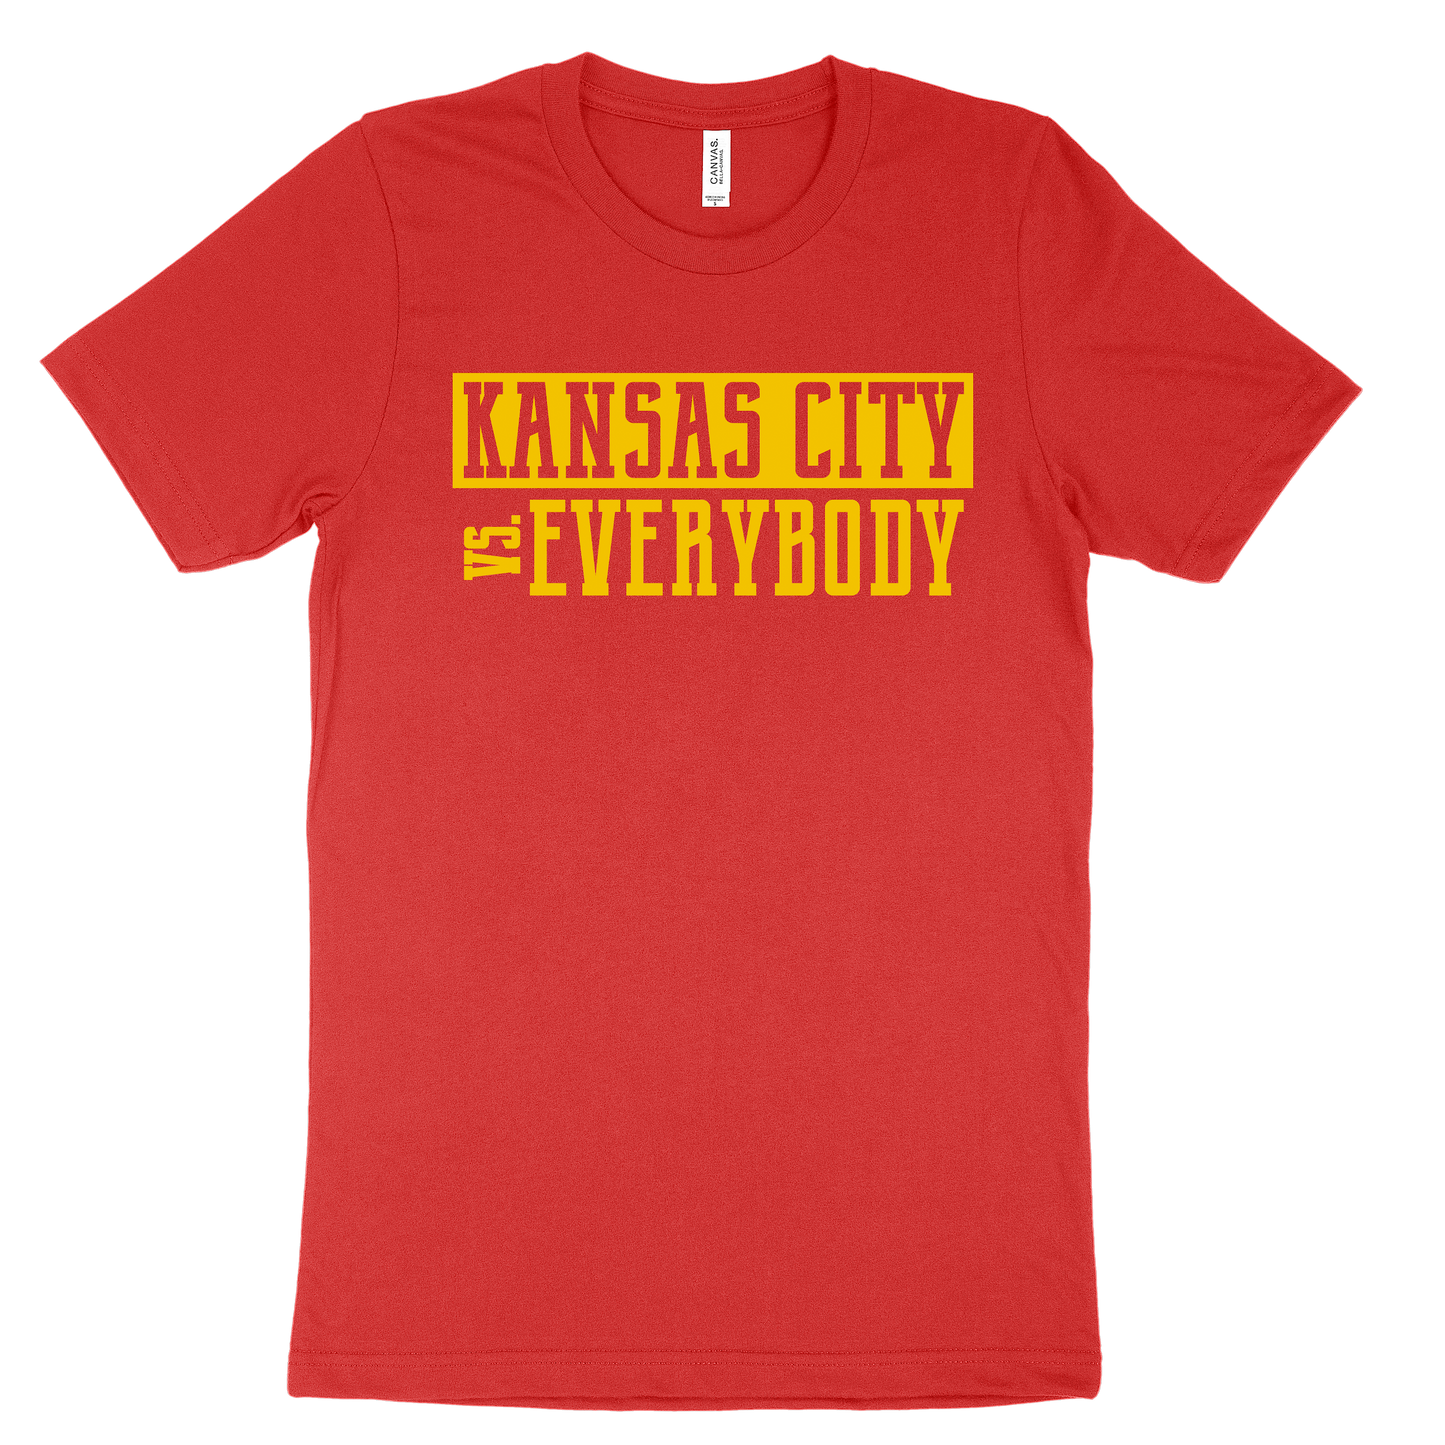 Kansas City vs. Everybody Tee - Red